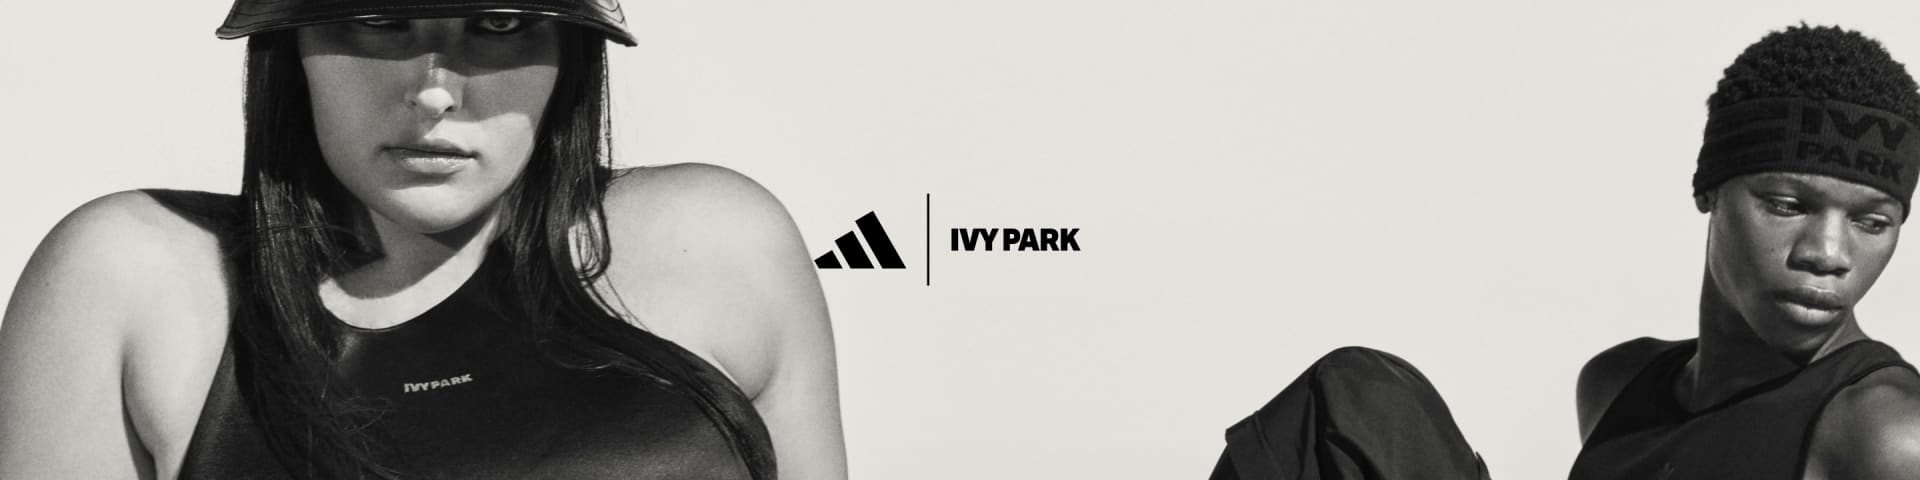 Adidas Ivy Park Bundle - Unisex, Other Women's Clothing